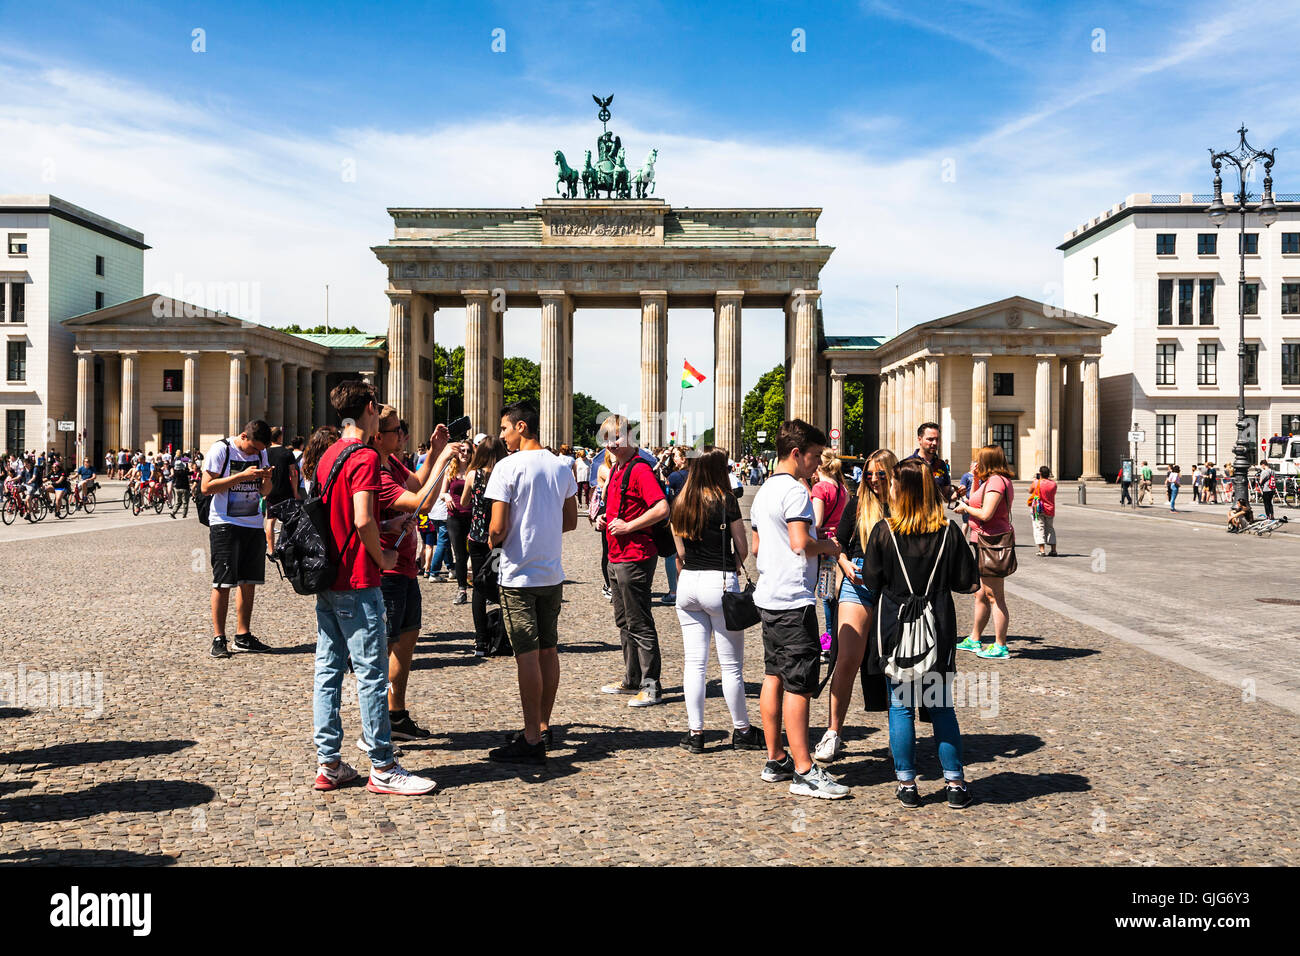 Touristen auf dem Brandenburger Tor, Pariser Platz (Brandenburger Tor), Mitte, Berlin, Deutschland. Stockfoto